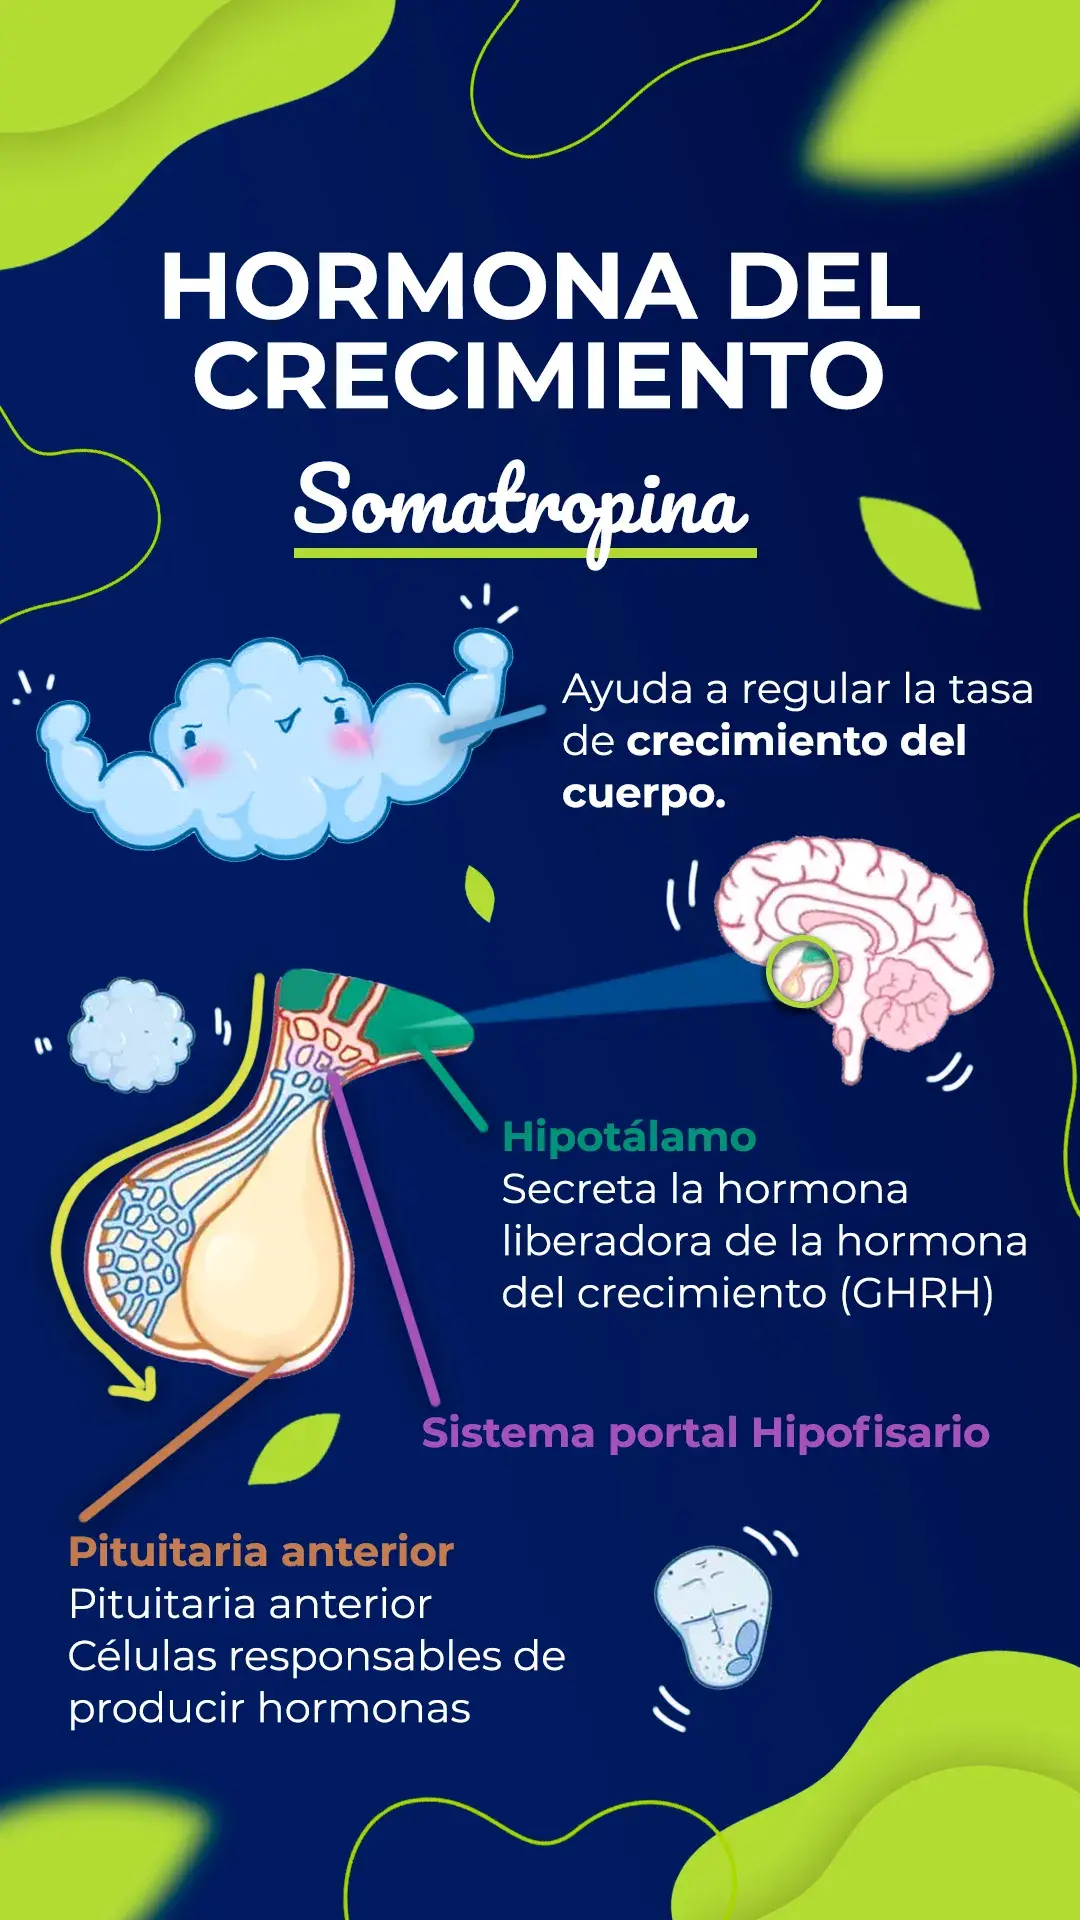 la somatropina ayuda a regular la tasa de crecimiento del cuerpo.